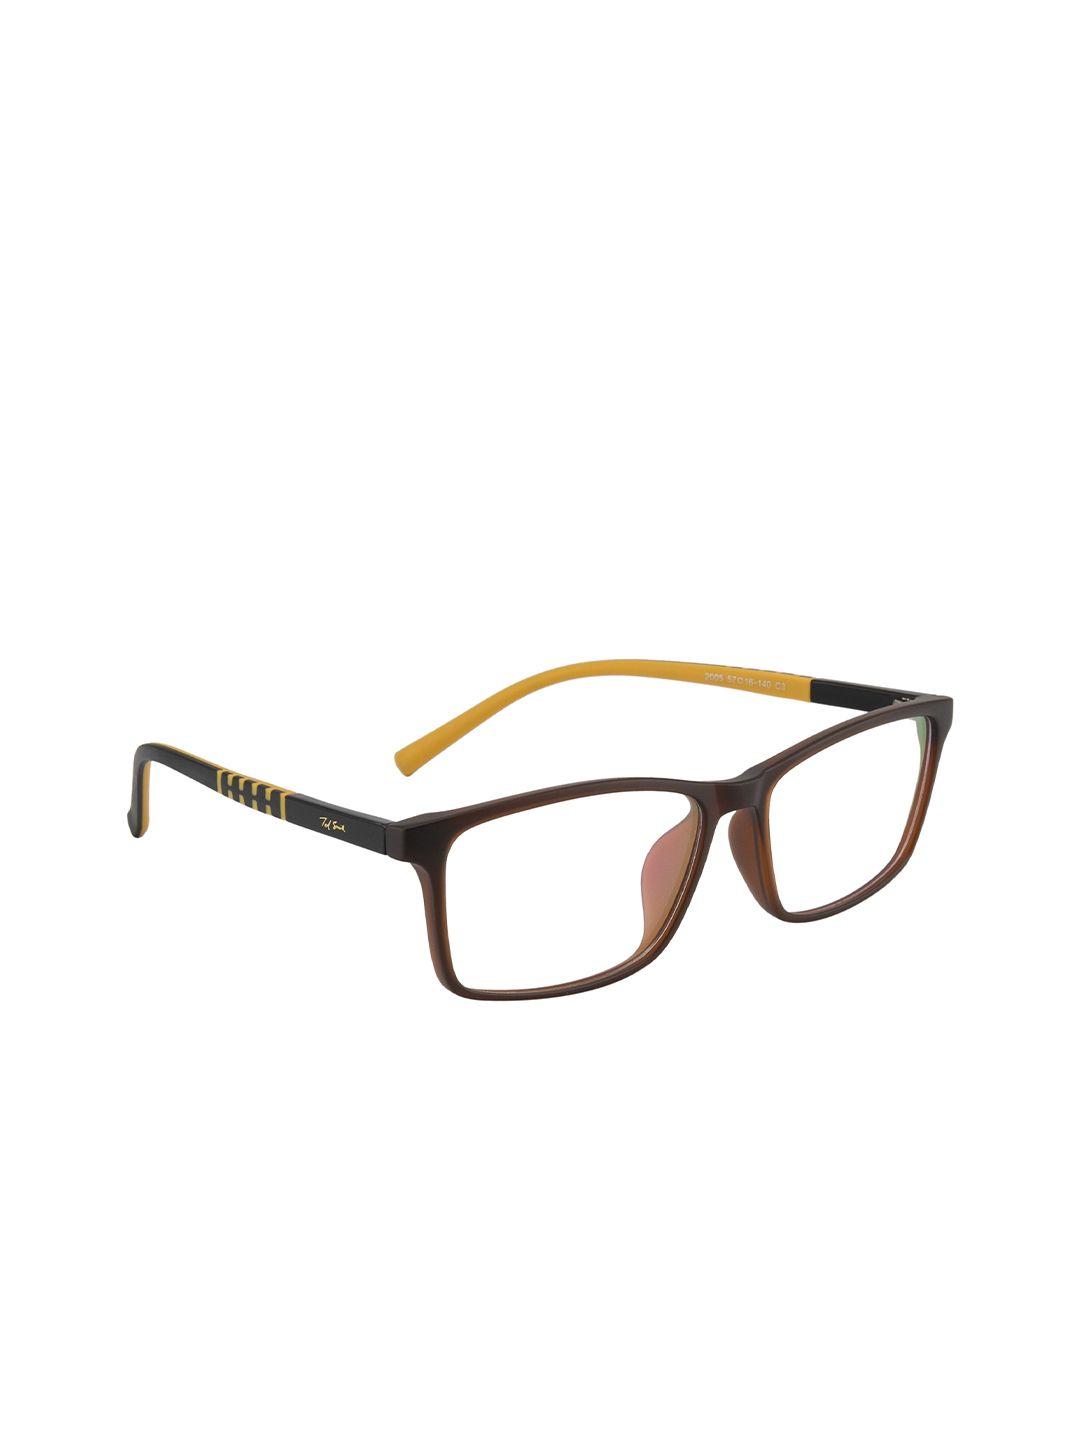 ted smith unisex brown & mustard full rim rectangle frames eyeglasses